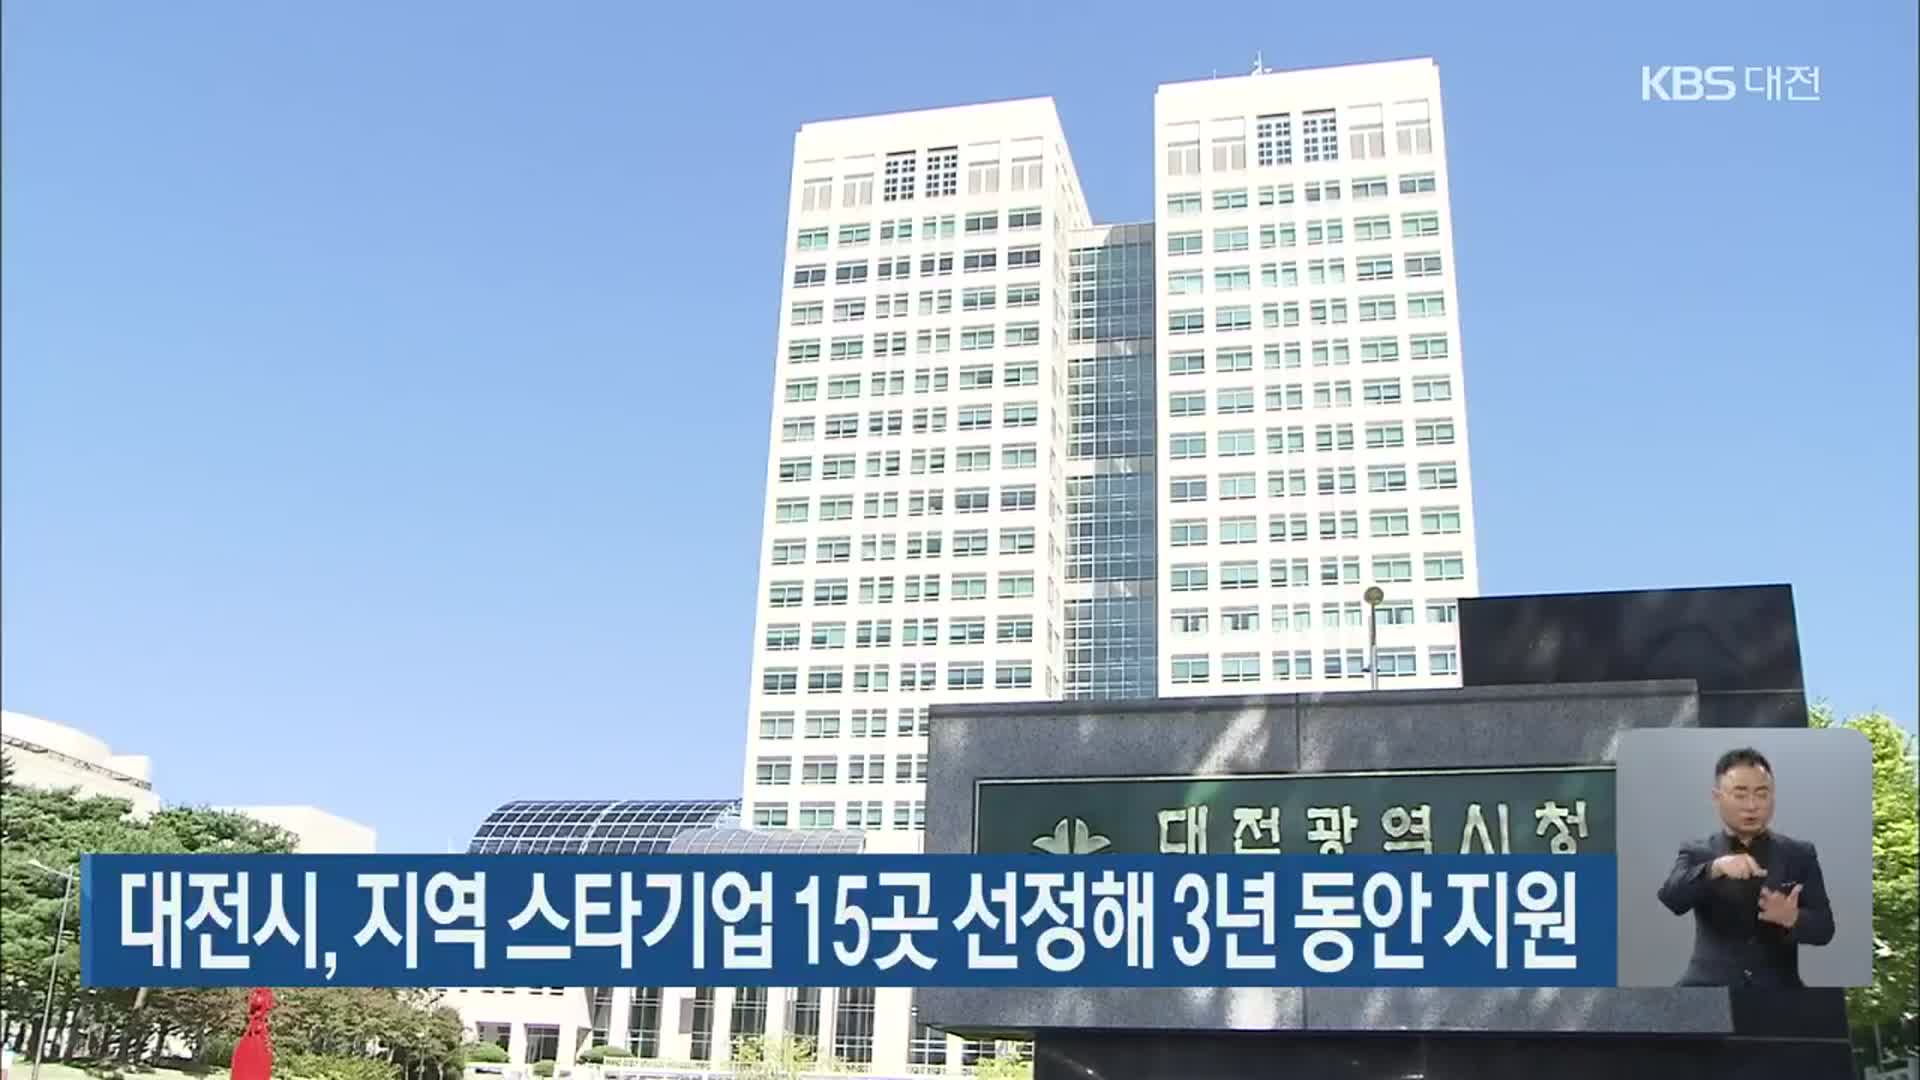 대전시, 지역 스타기업 15곳 선정해 3년 동안 지원